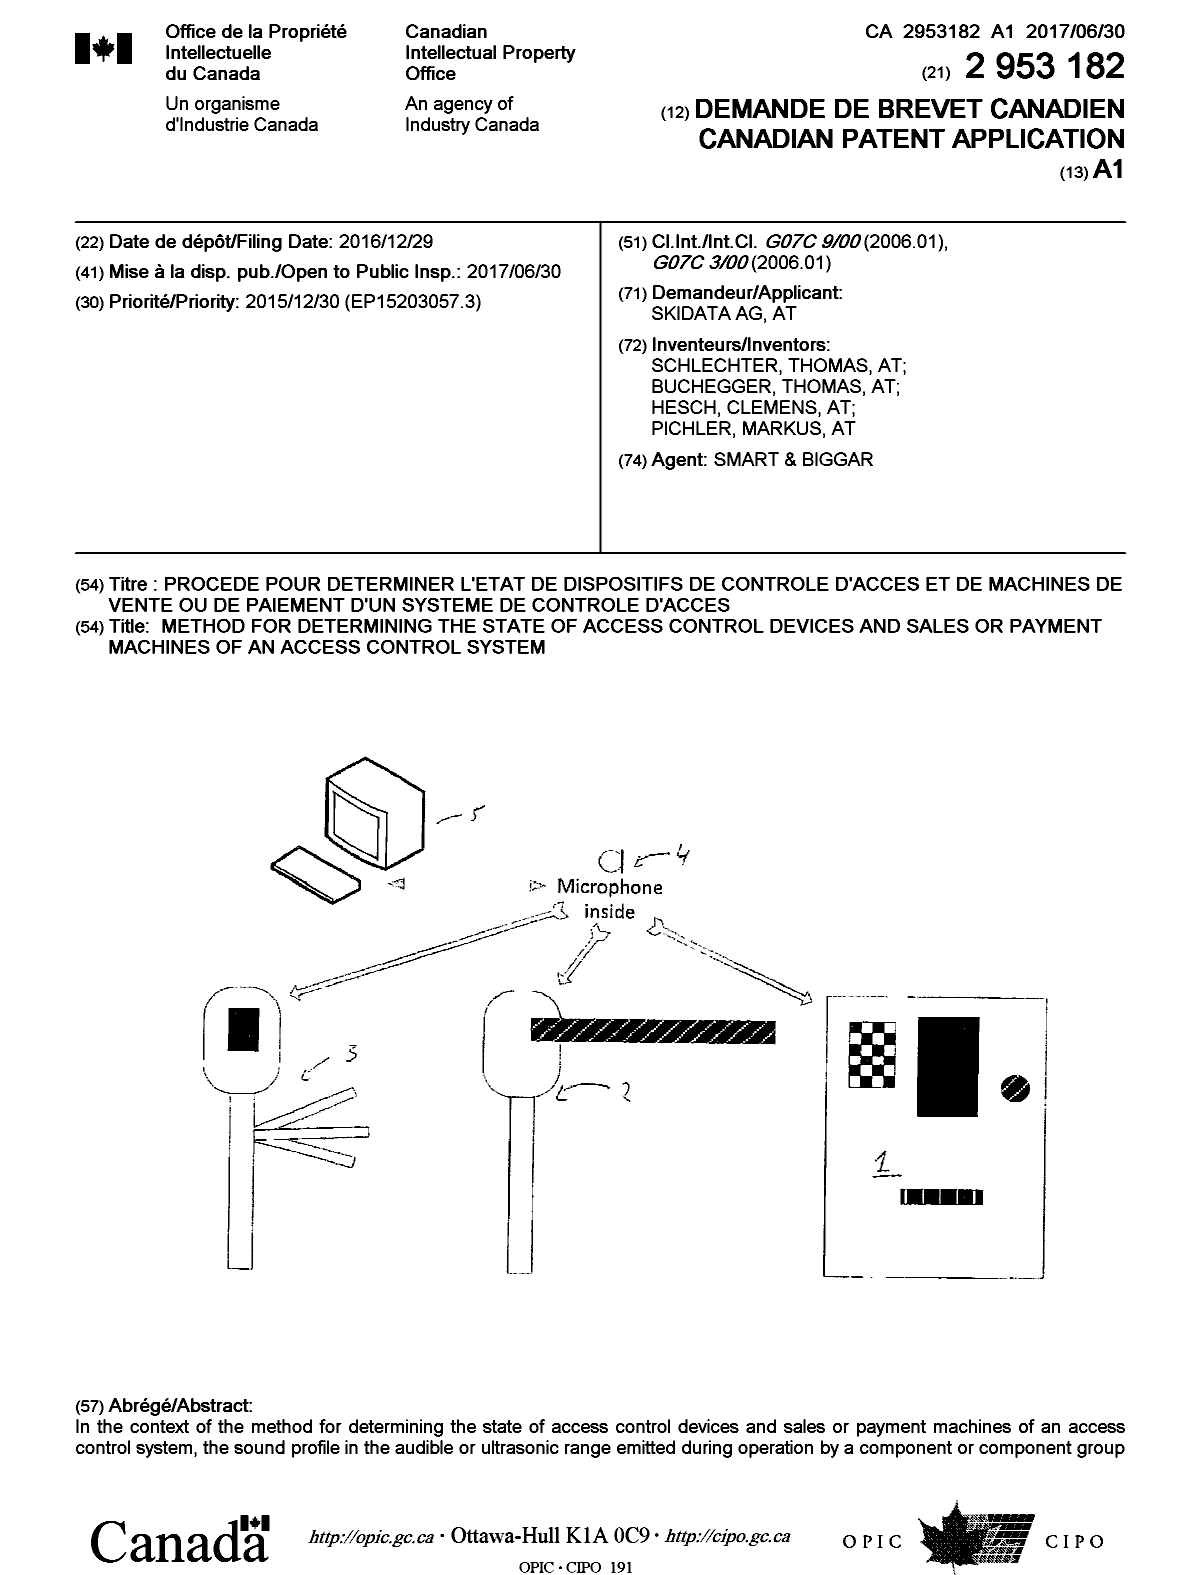 Document de brevet canadien 2953182. Page couverture 20170602. Image 1 de 2